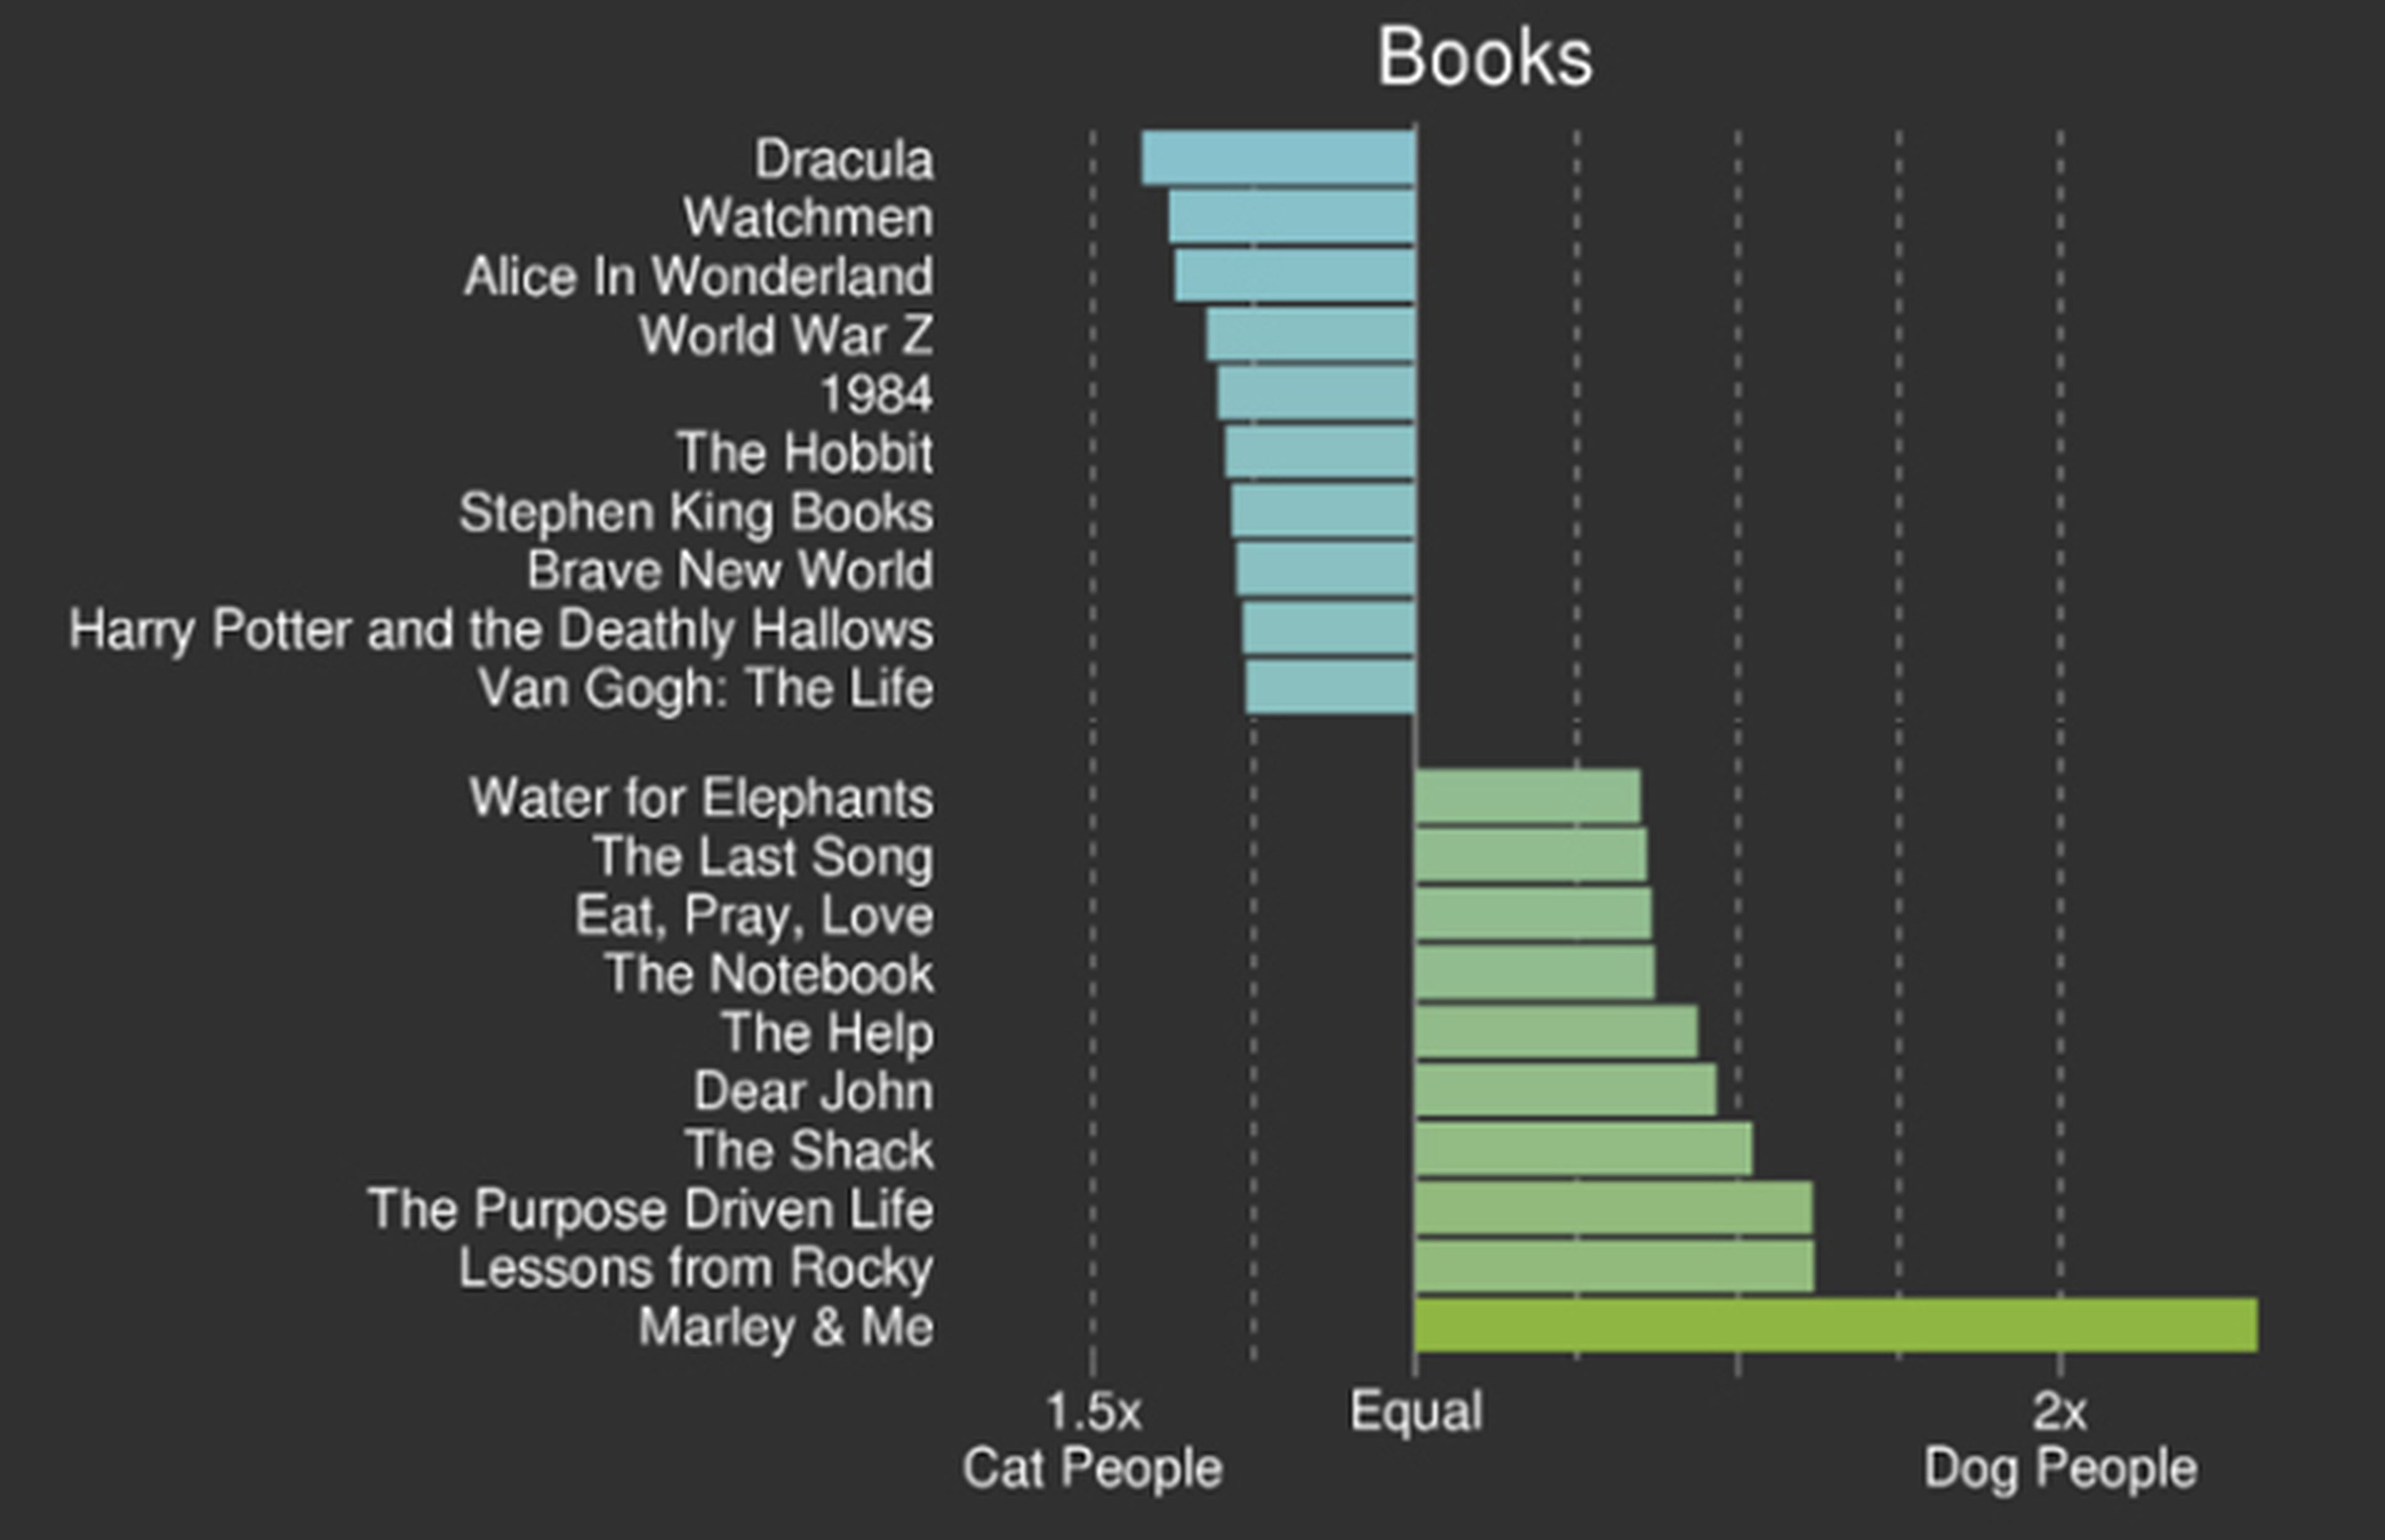 ¿Qué libros prefieren los dueños de gatos y perros?